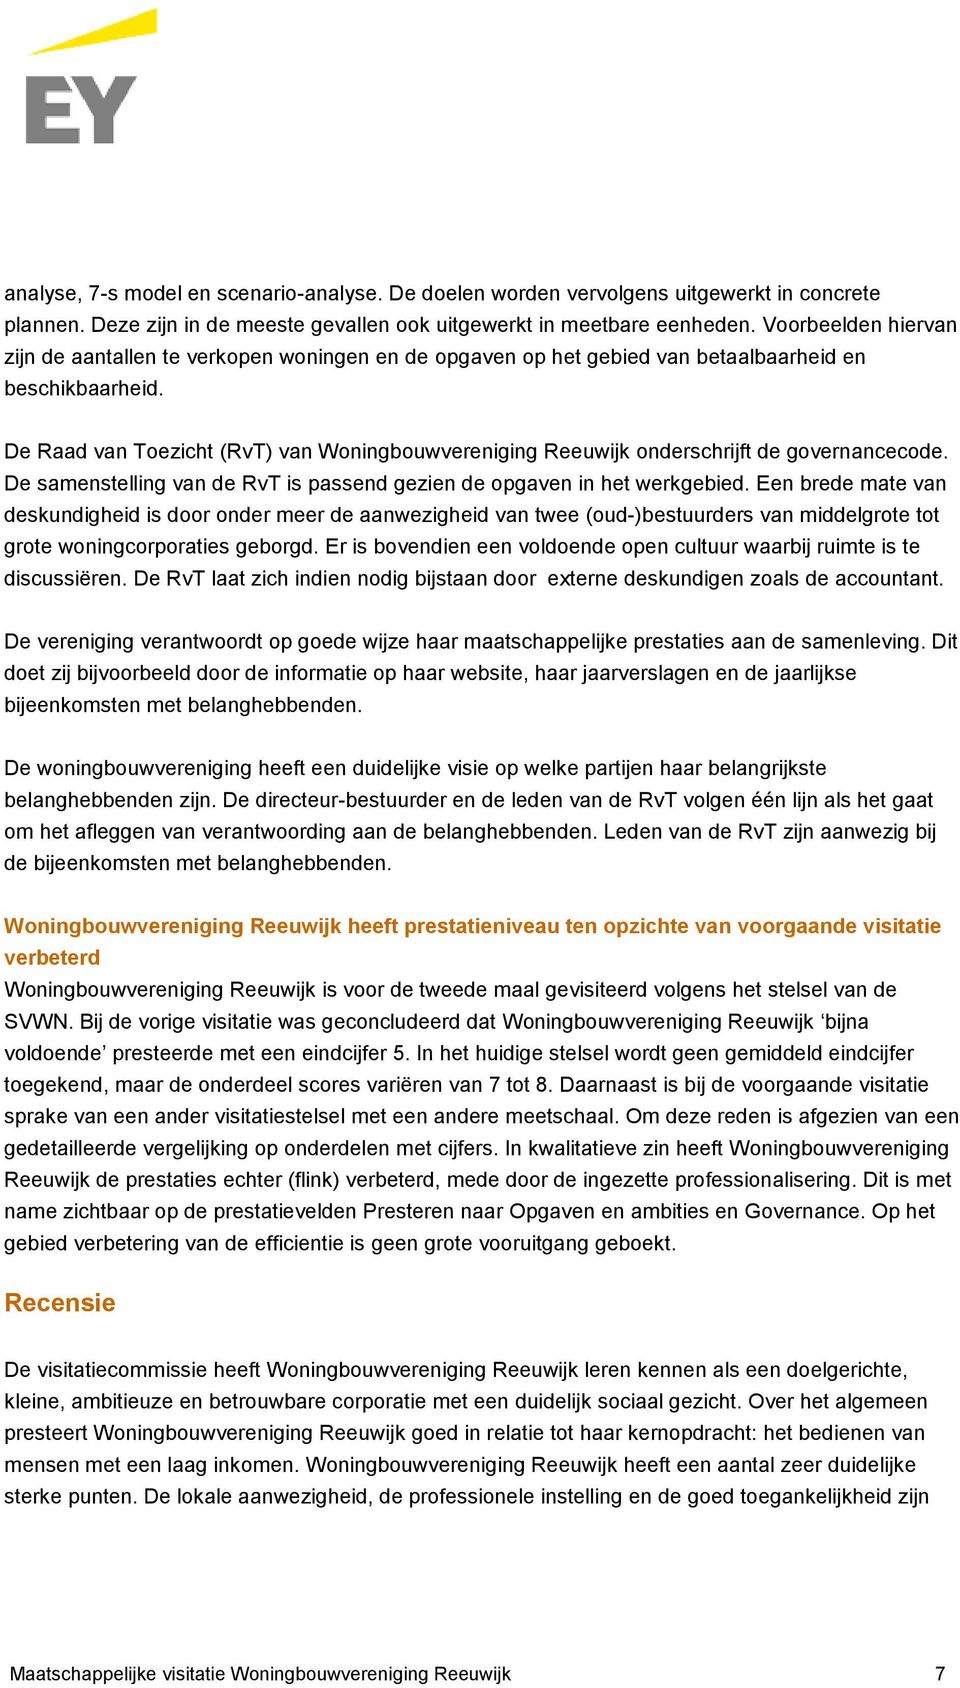 De Raad van Toezicht (RvT) van Woningbouwvereniging Reeuwijk onderschrijft de governancecode. De samenstelling van de RvT is passend gezien de opgaven in het werkgebied.